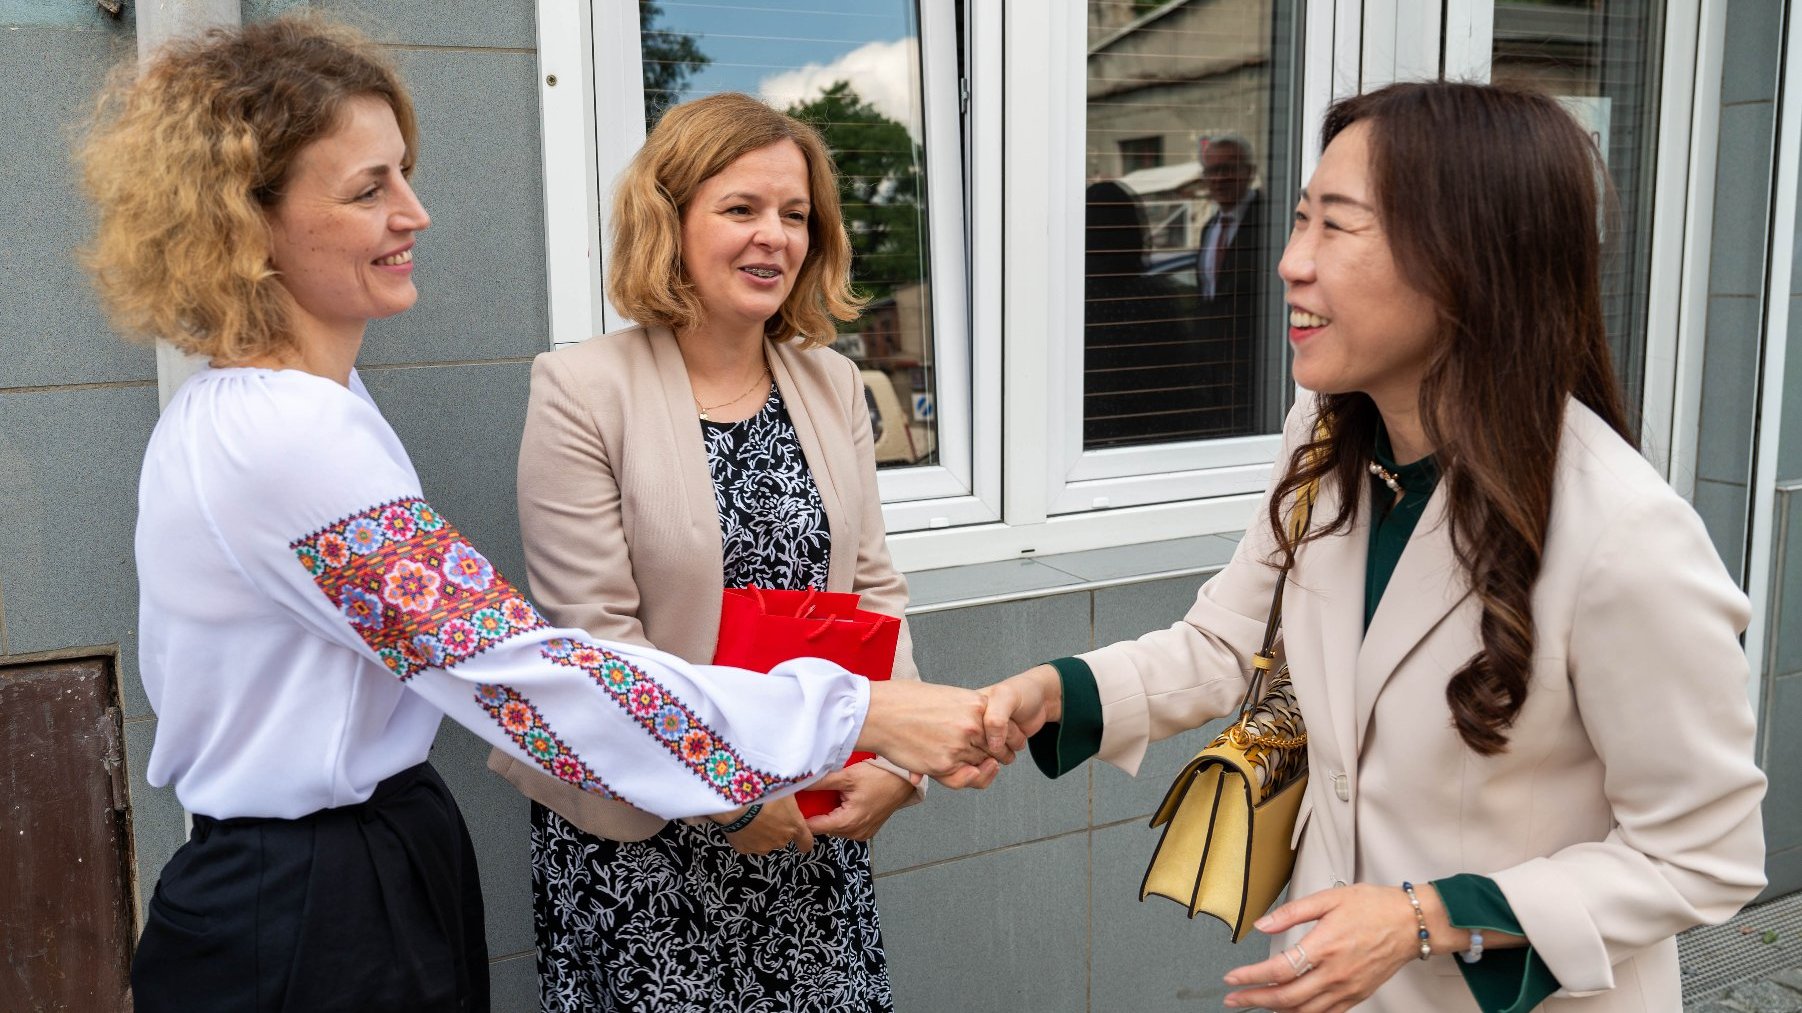 Na zdjęciu ambasador Tajwanu witająca się z dwiema kobietami